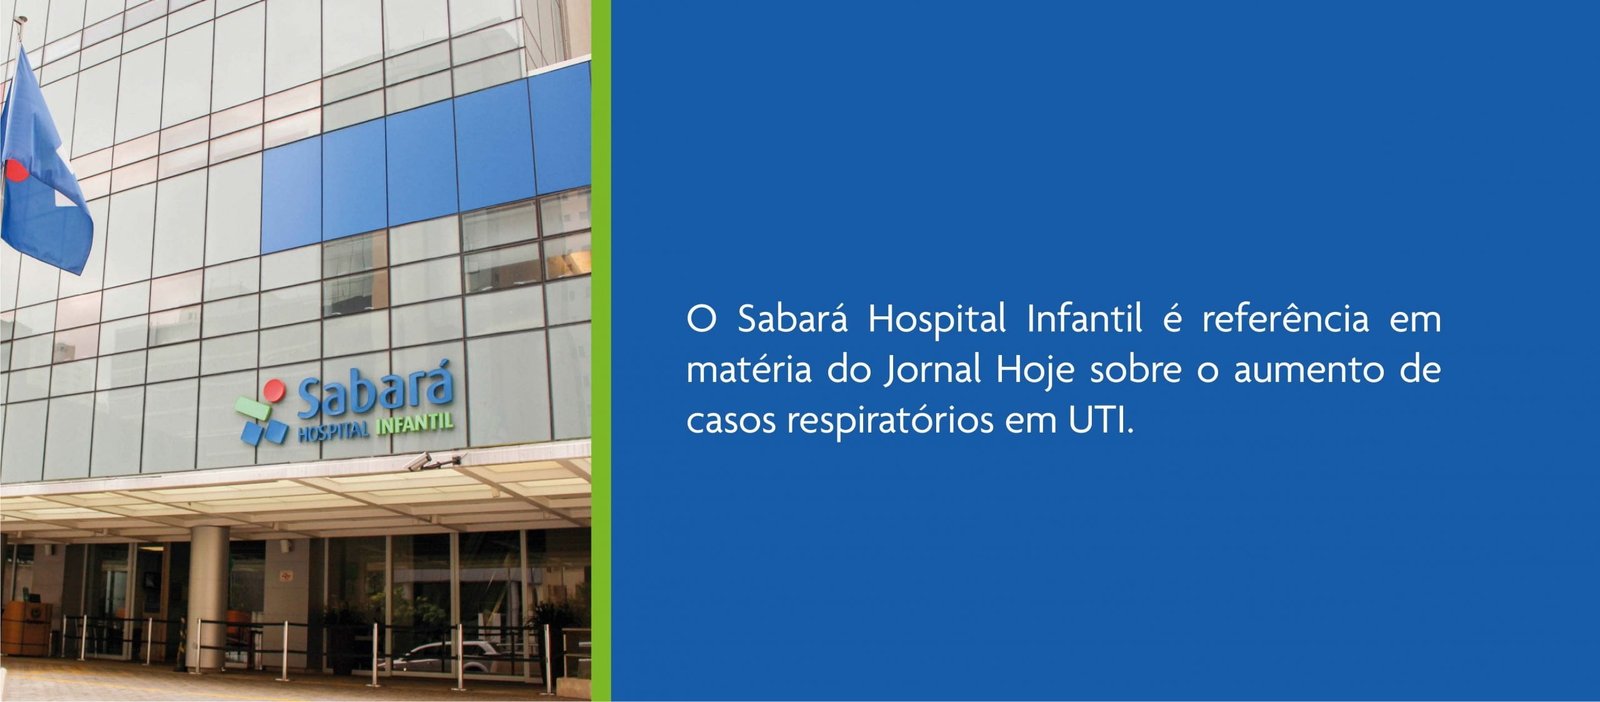 Sabará Hospital Infantil é Referência Em Matéria Do Jornal Hoje Hospital Sabará 7201